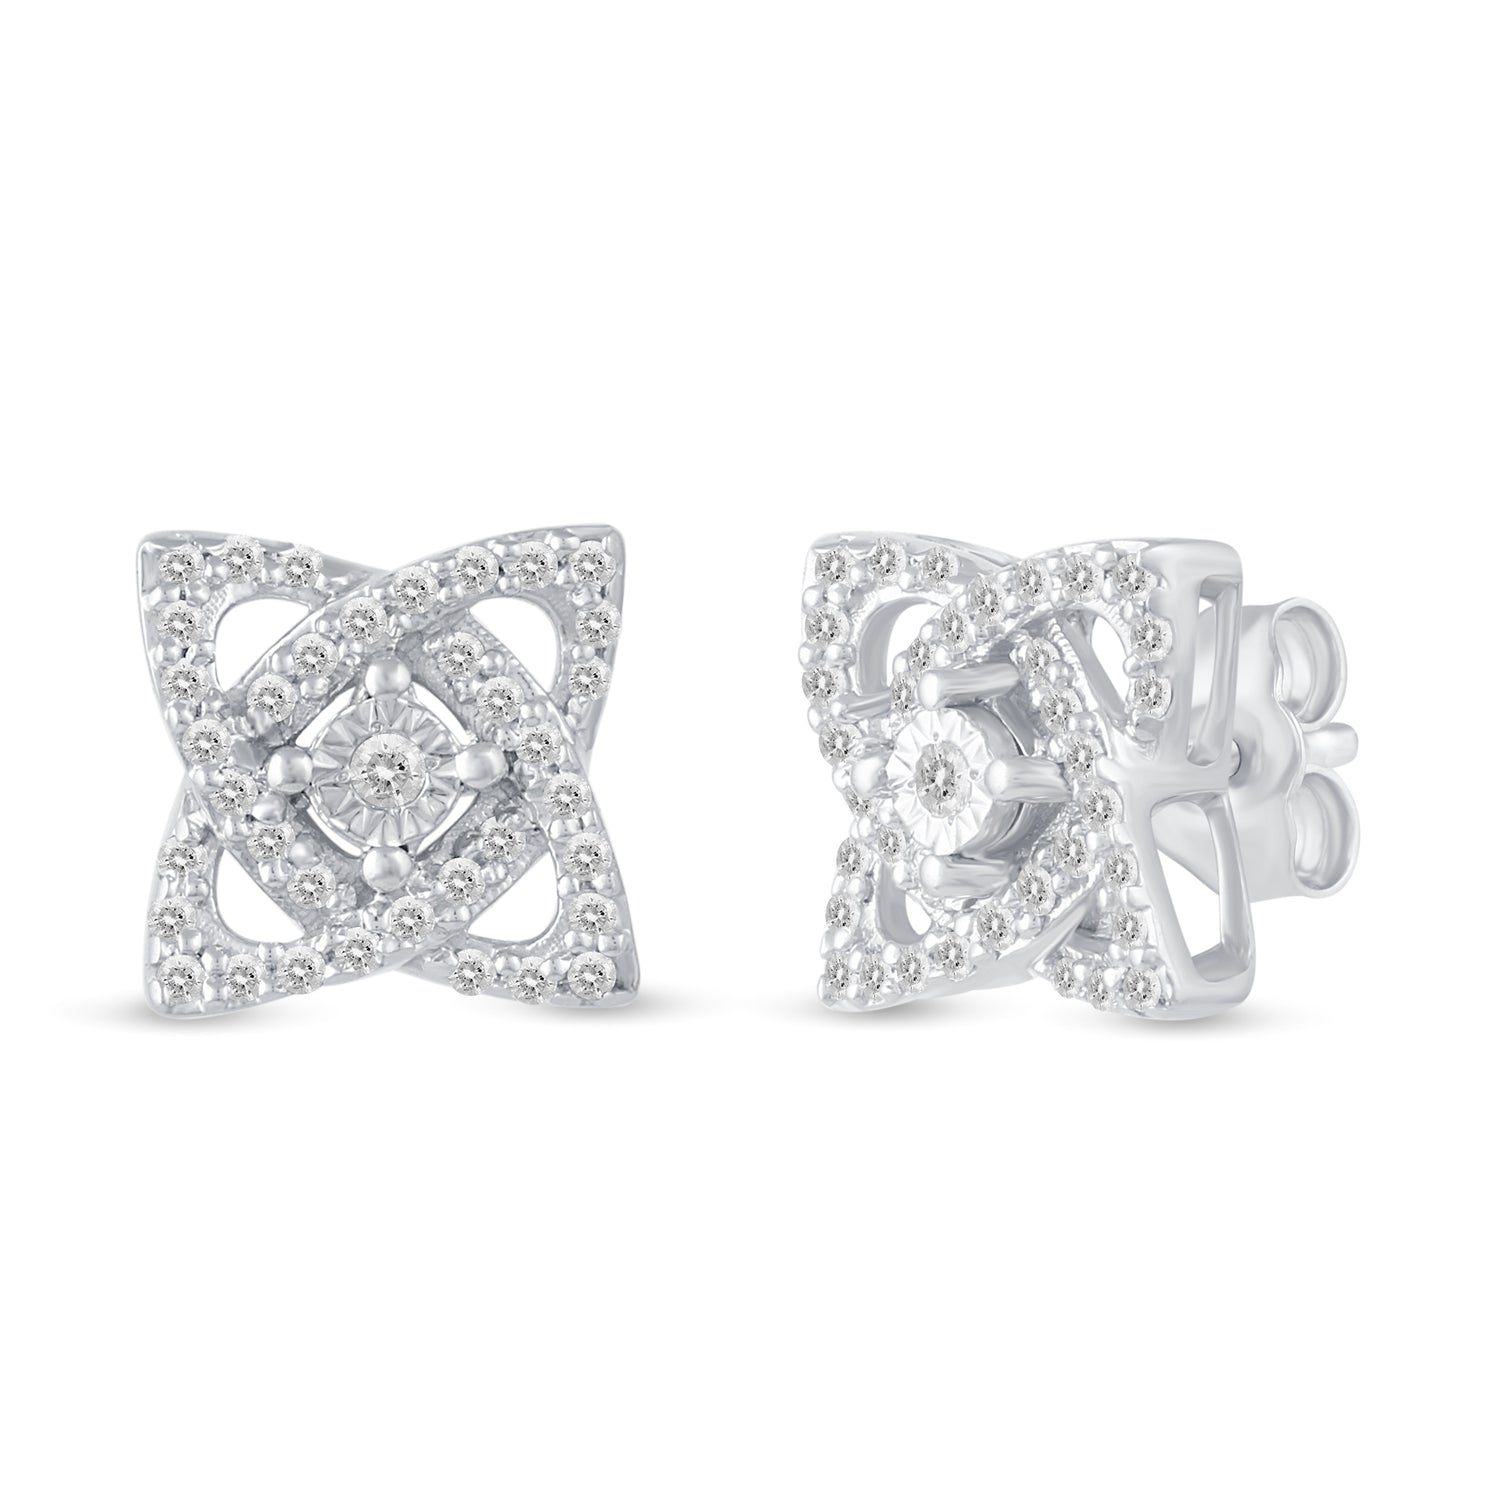 Set of 2 : 1/3 CT TW Diamond Open Petal Flower Pendant & Earrings in 925 Sterling Silver